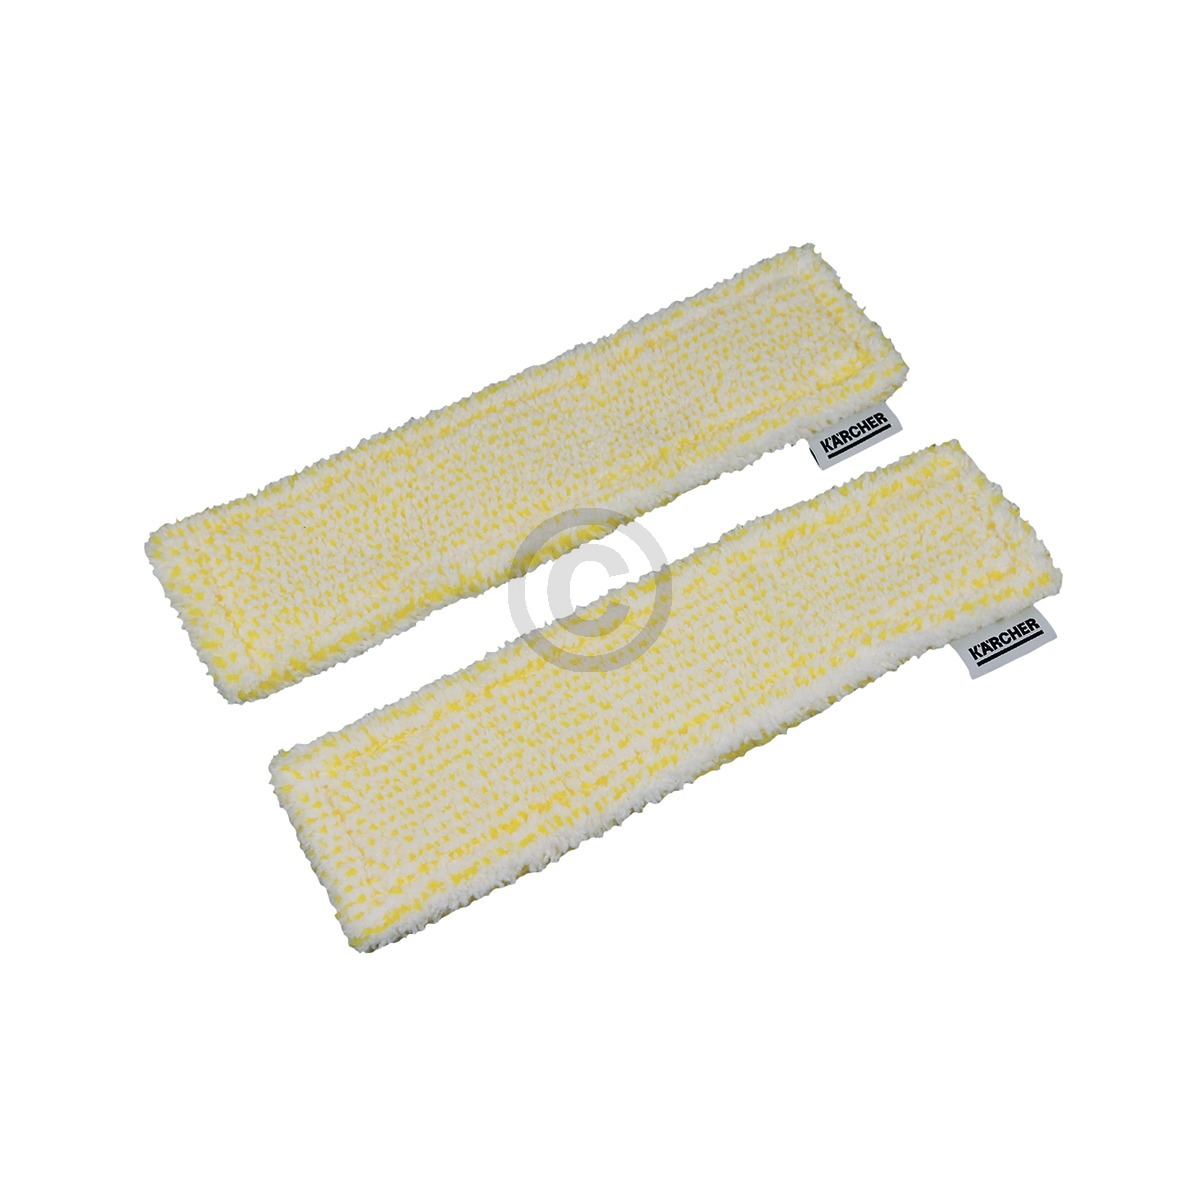 2x Mikrofaser Wischbezug gelb für Kärcher 2.633-130.0 